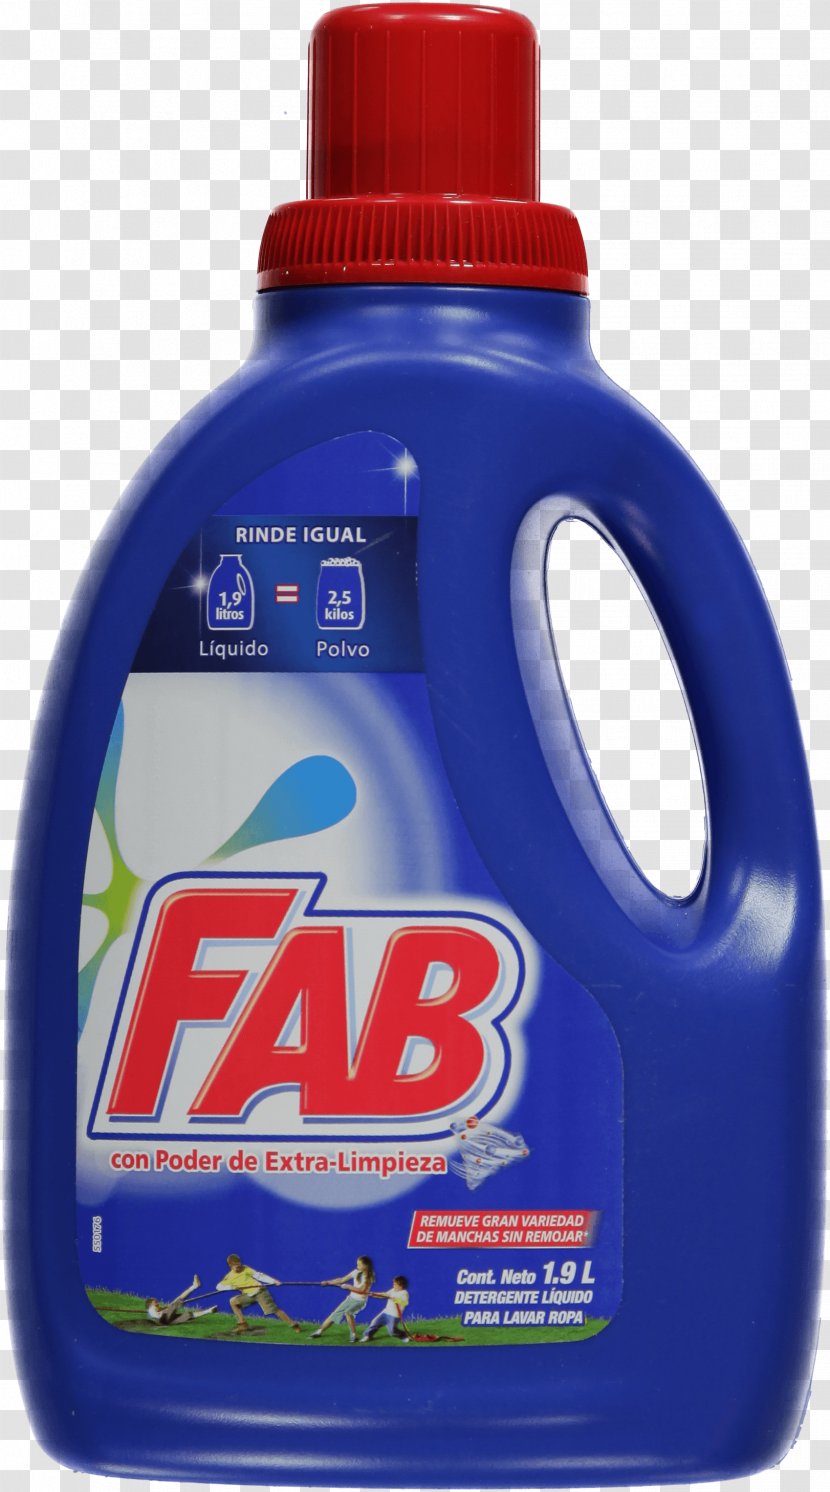 Laundry Detergent Liquid Soap Fluid Transparent PNG